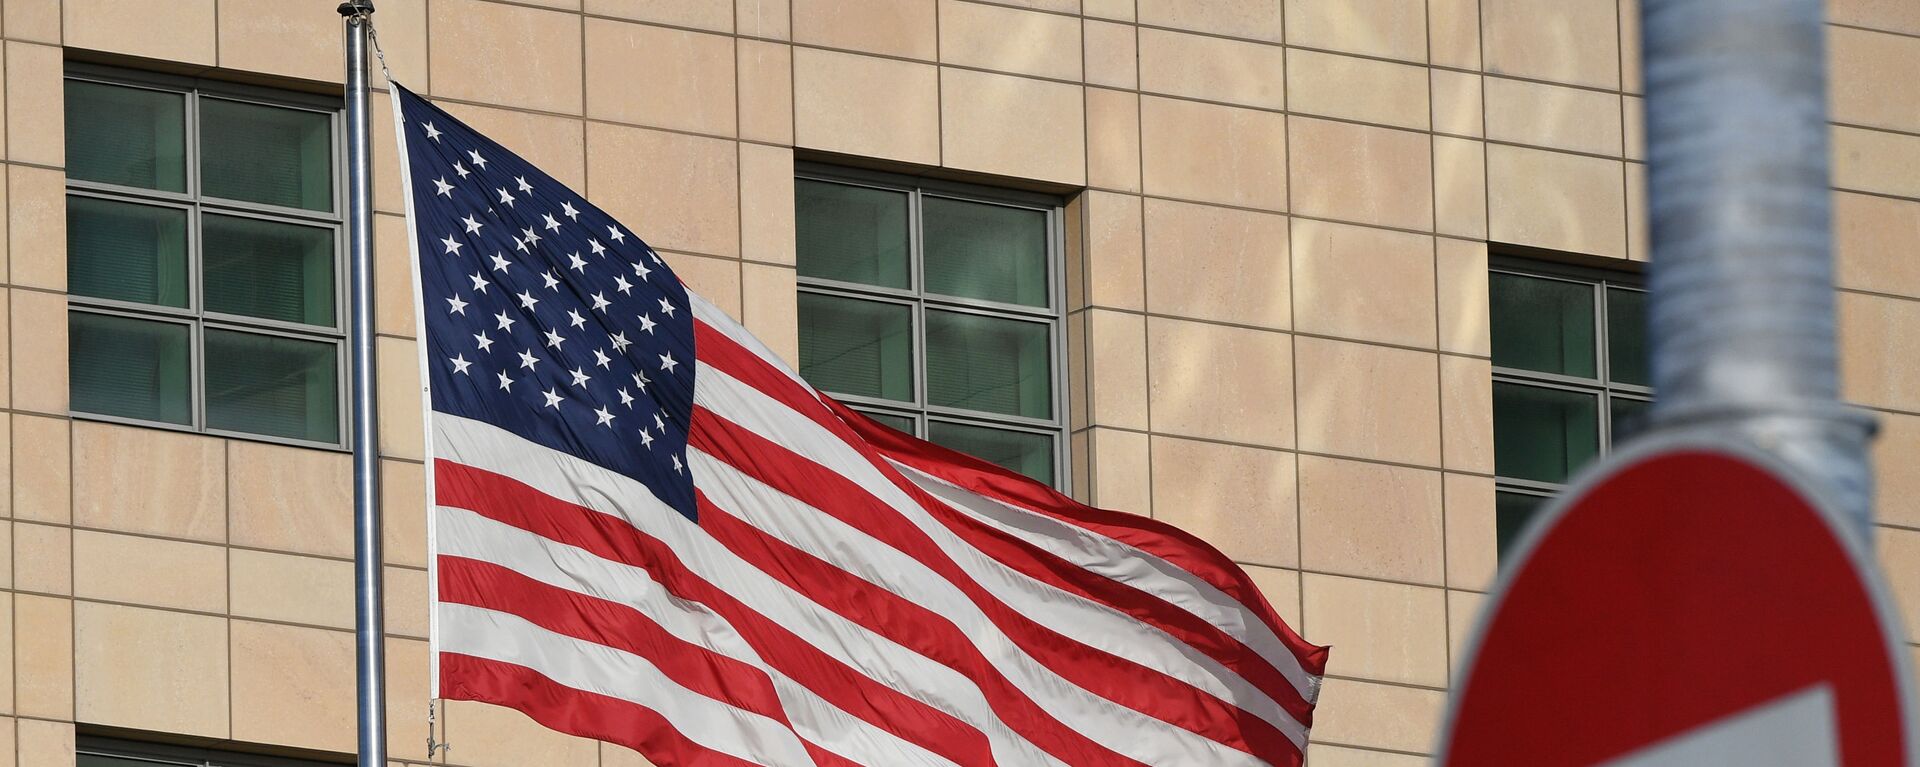 Государственный флаг США у американского посольства в Москве - Sputnik Lietuva, 1920, 22.09.2021